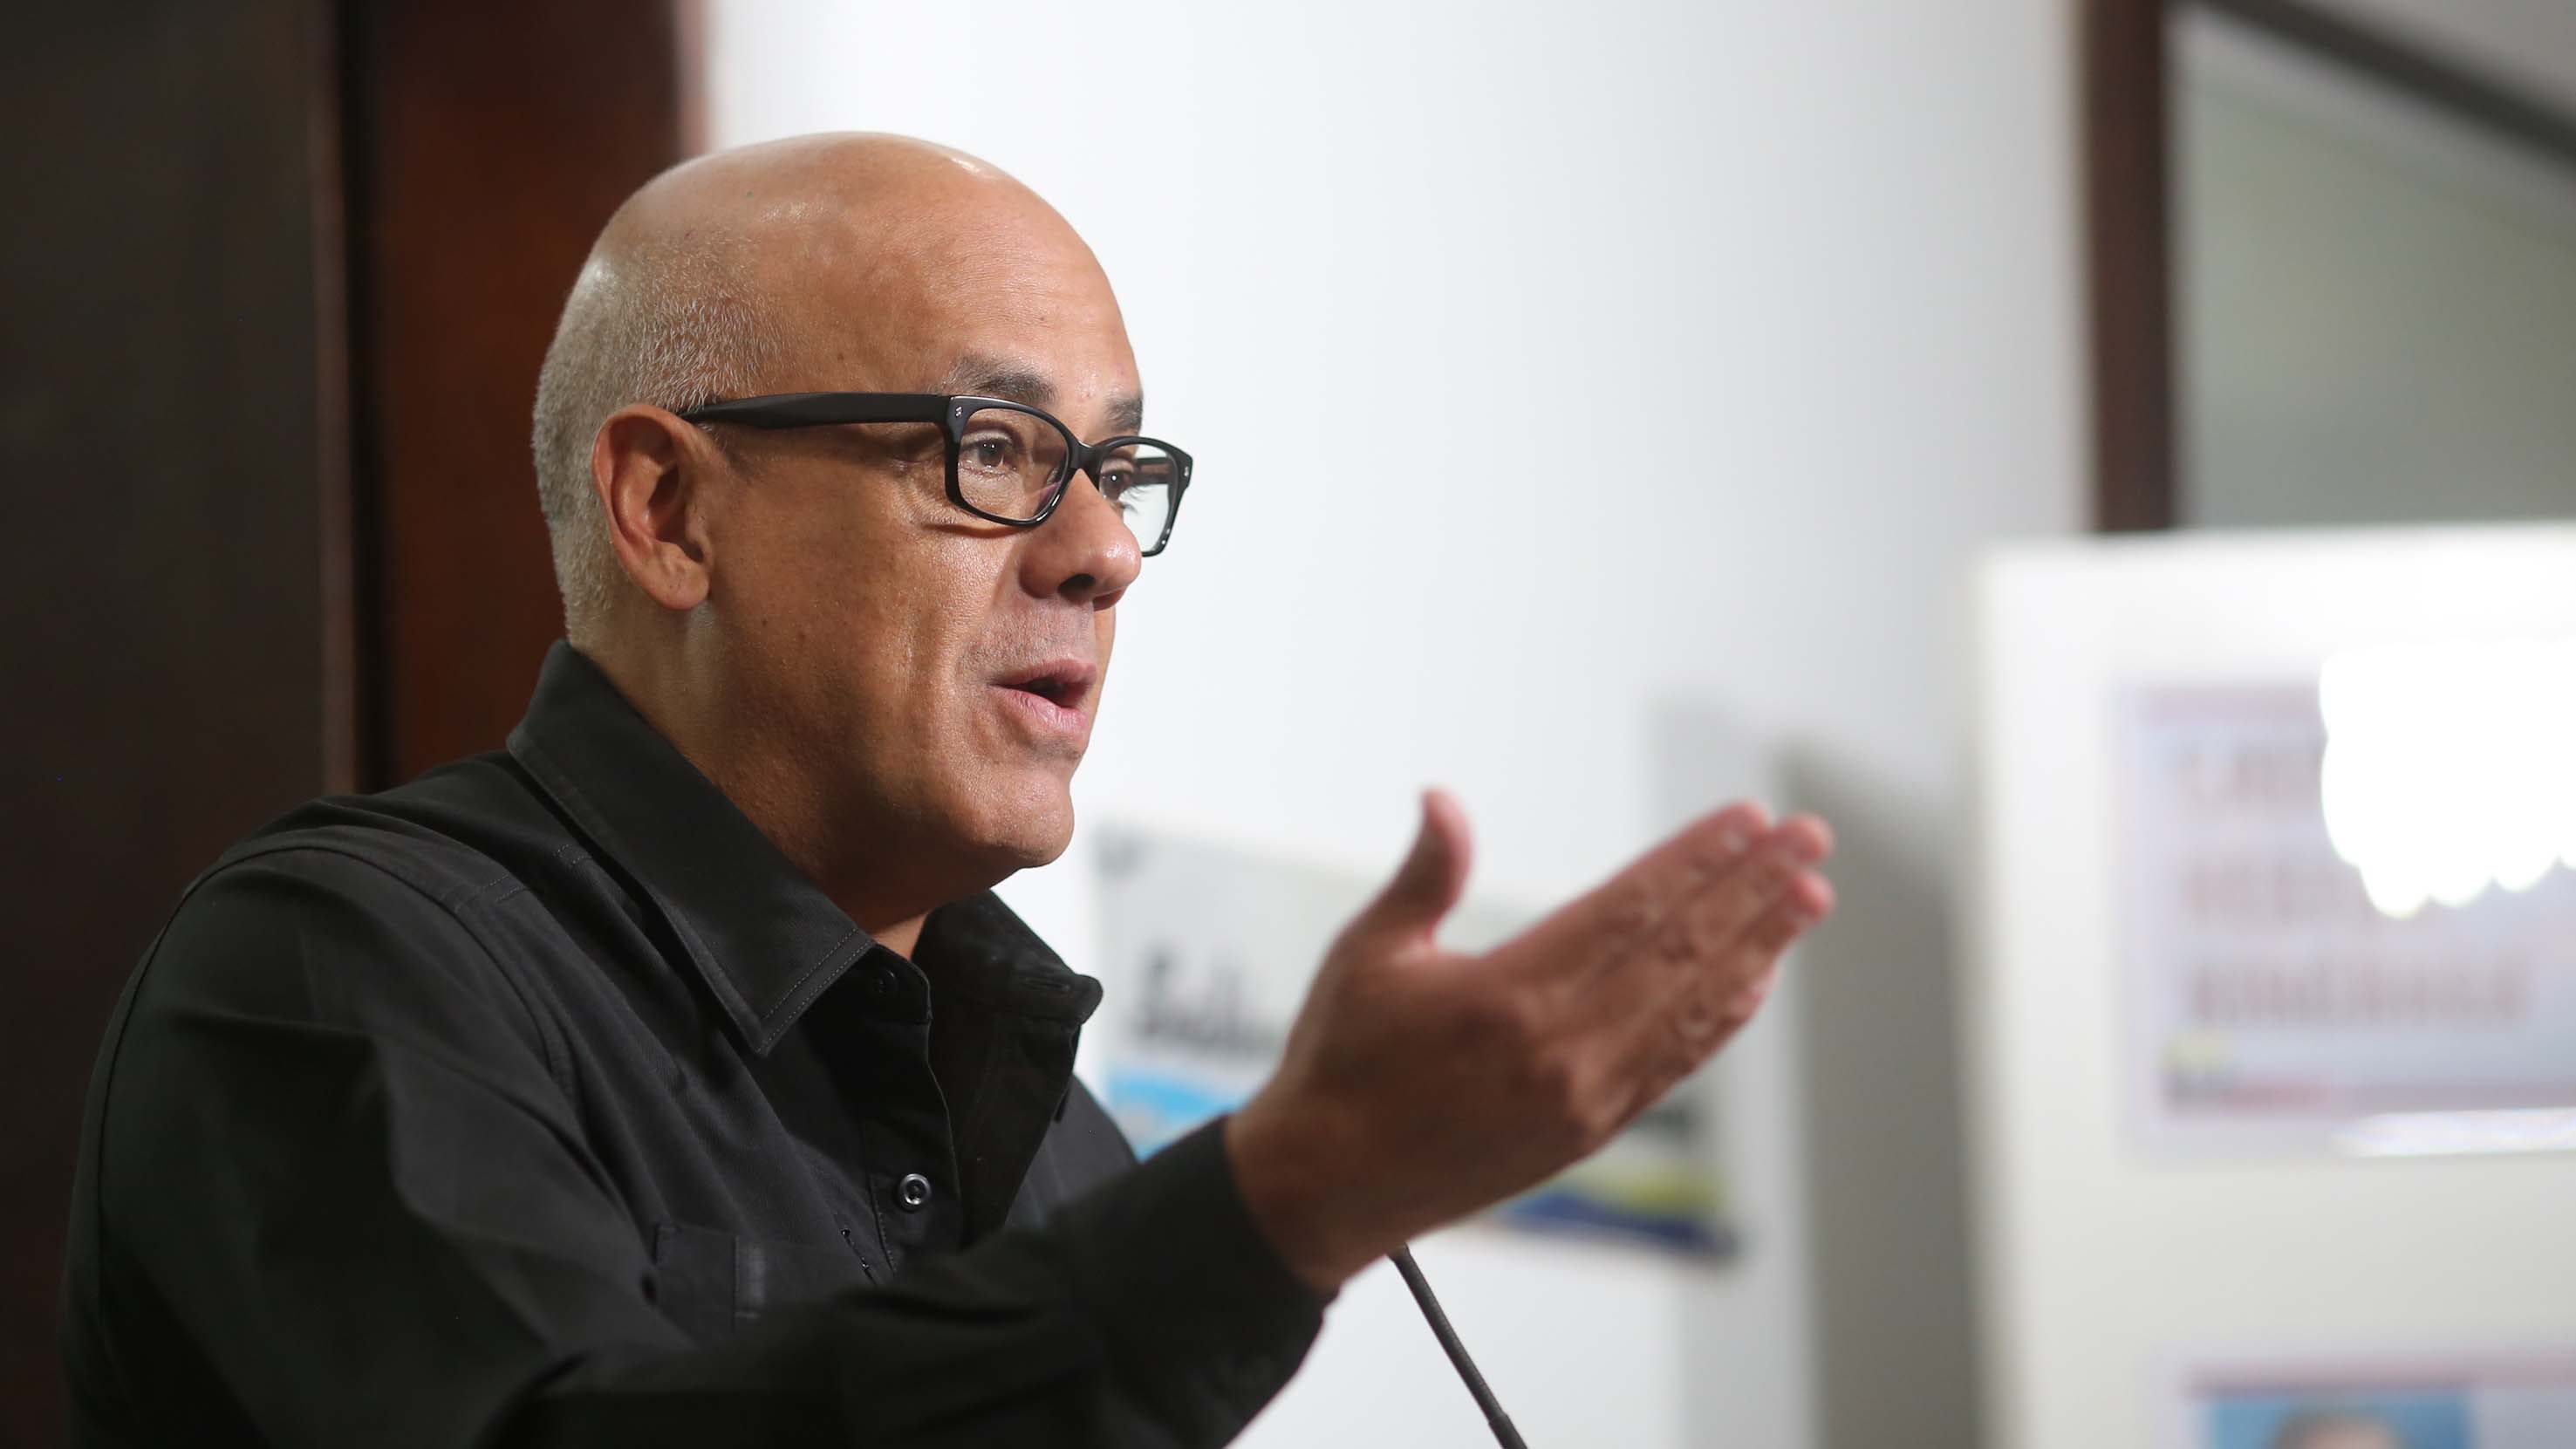 El ministro Jorge Rodríguez ratificó que el oficialismo espera continuar dialogando con sectores de la oposición